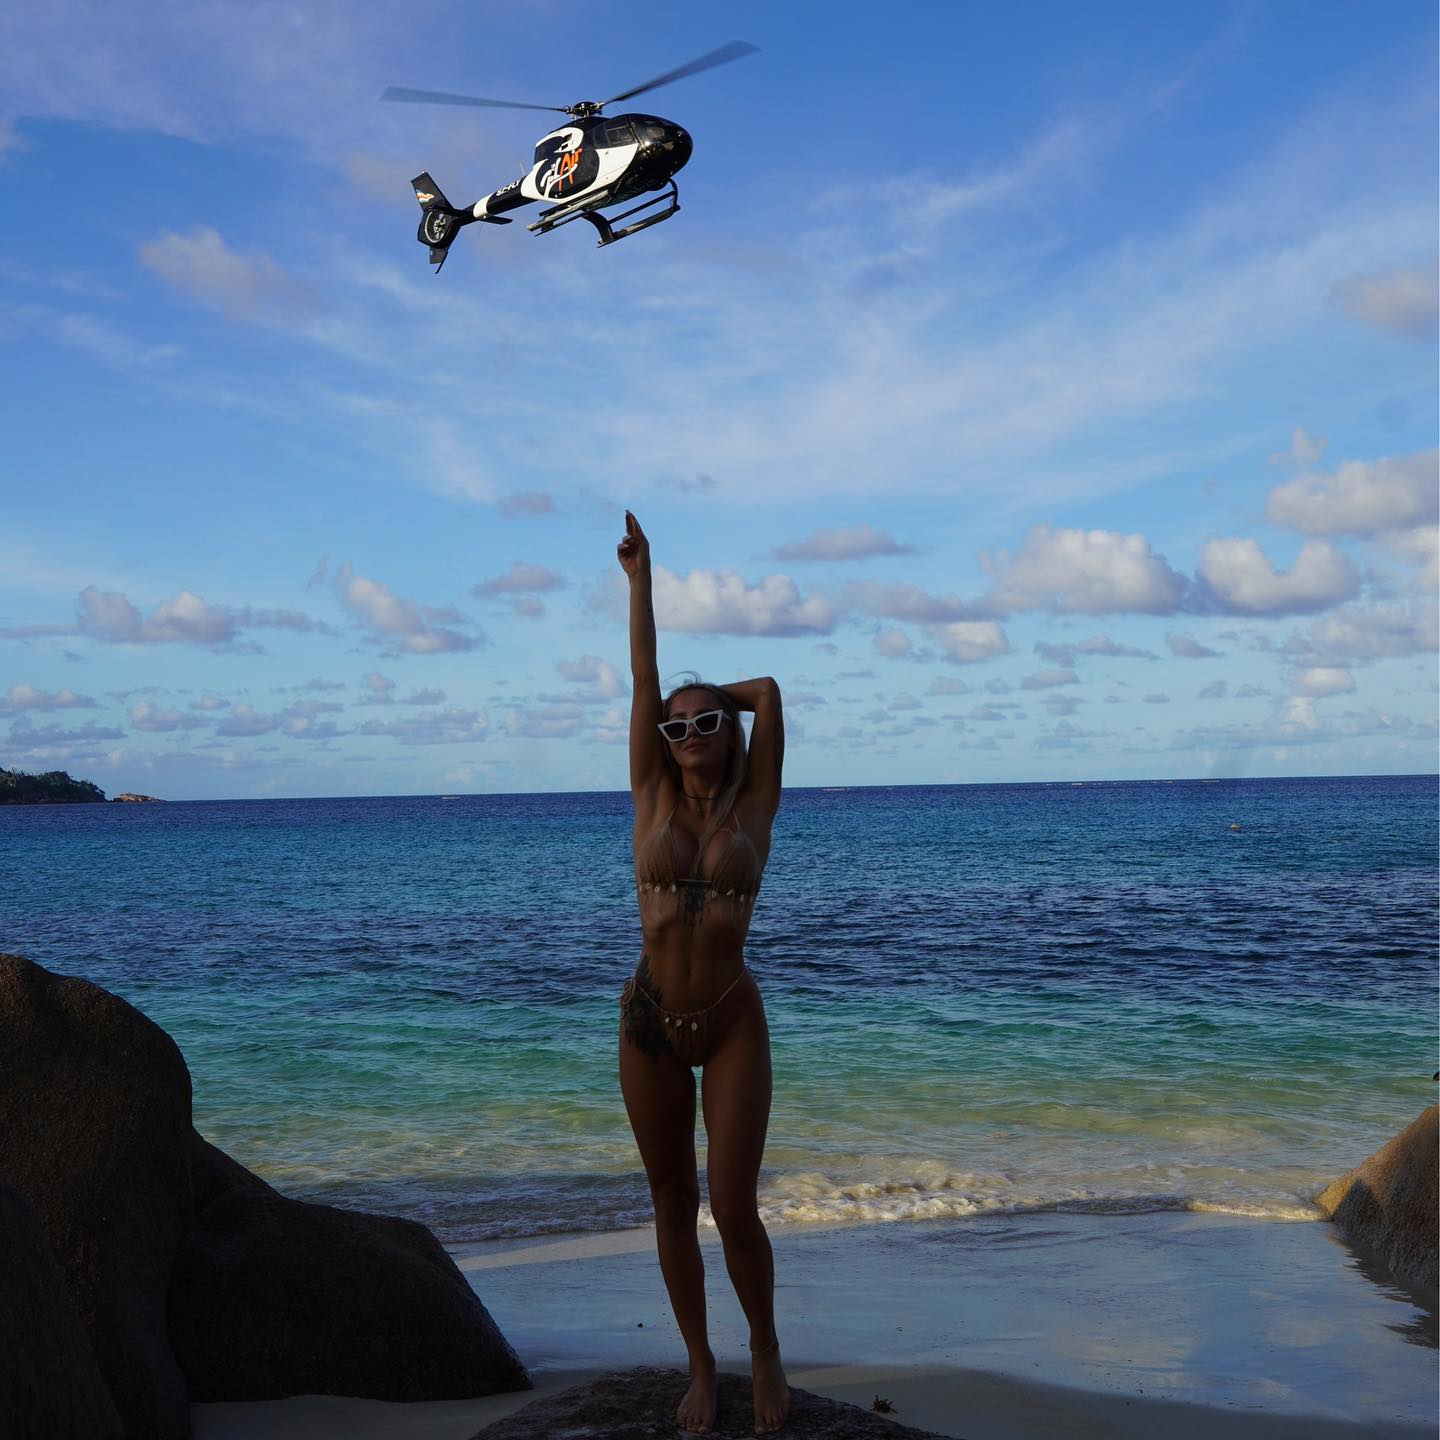 Und Claudia enttäuschte nicht, als sie im Bikini dastand und auf einen Hubschrauber zeigte